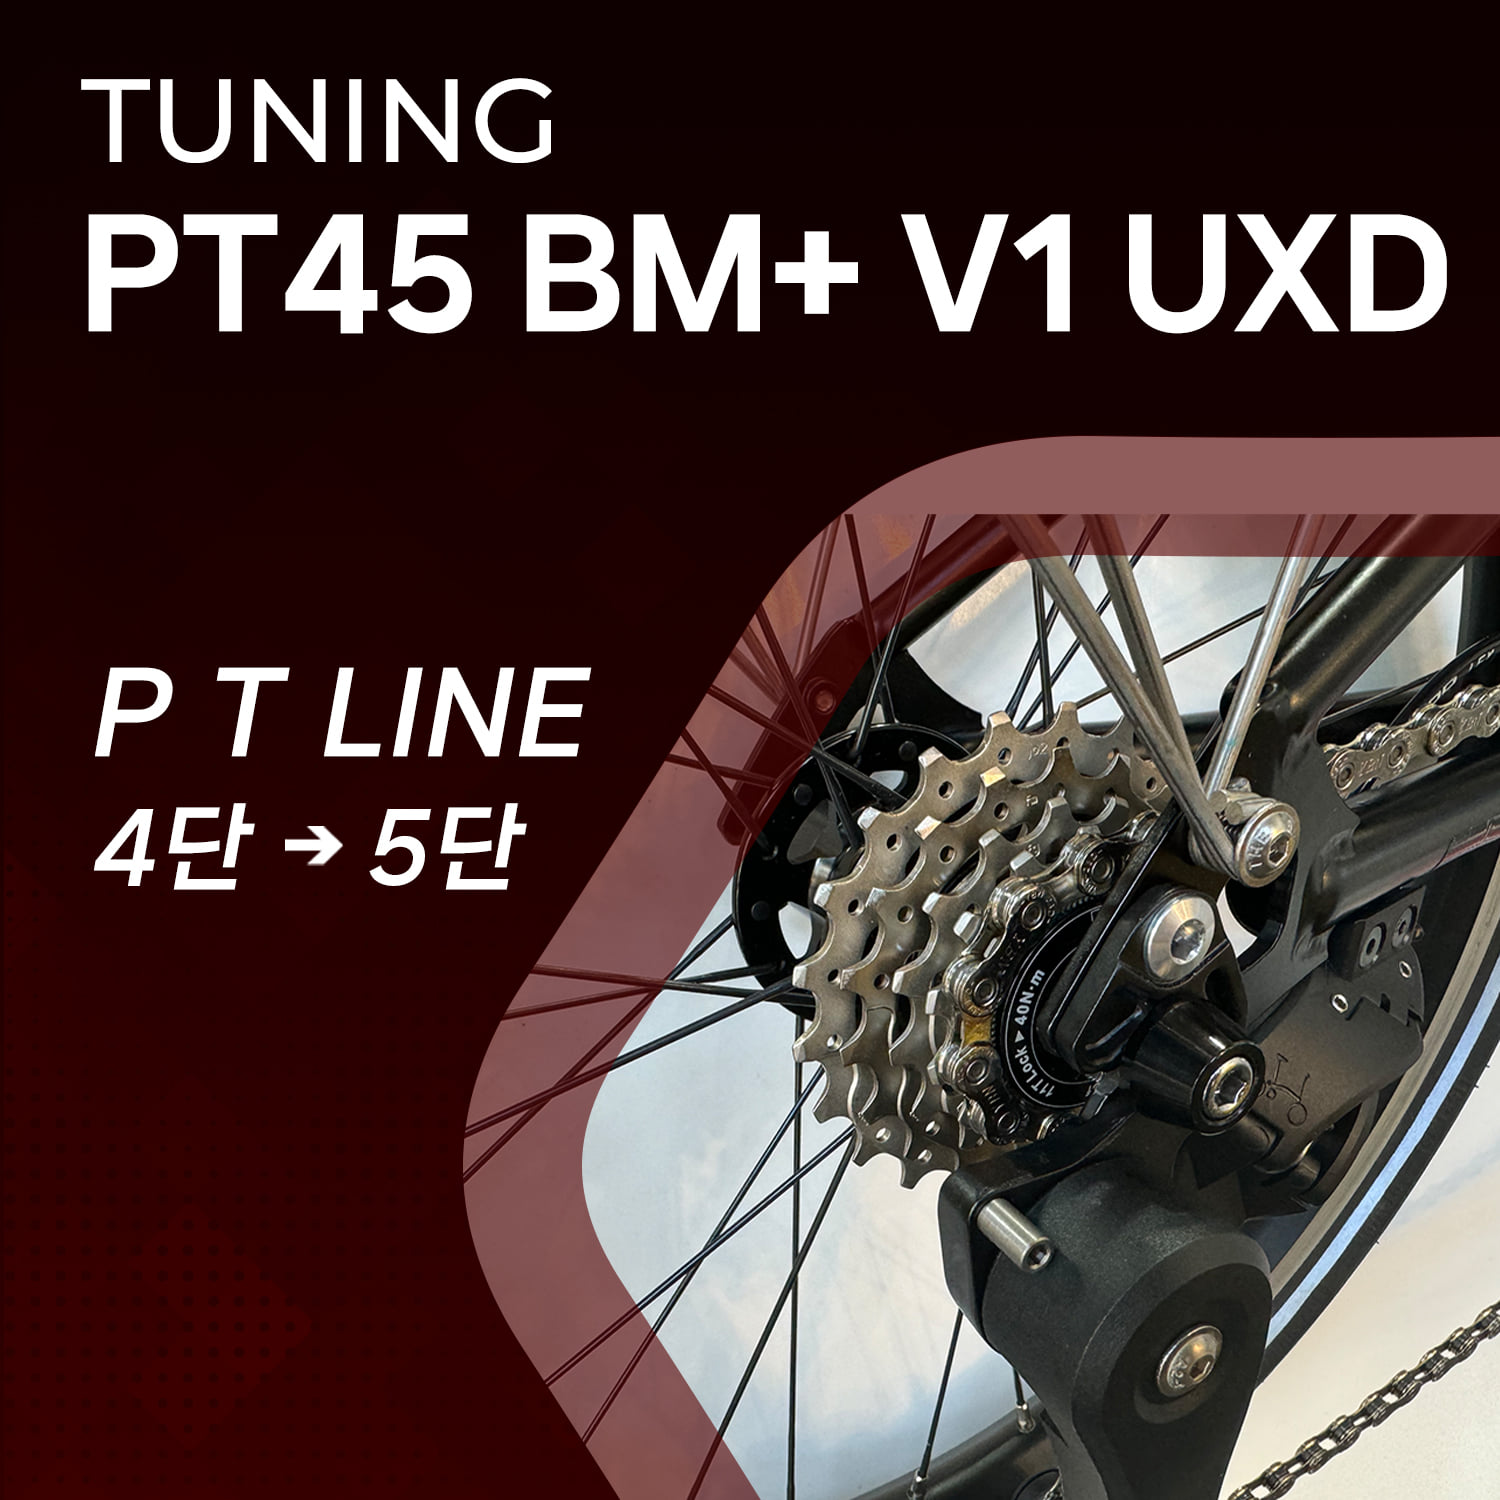 PT45 BM+ V1 UXD